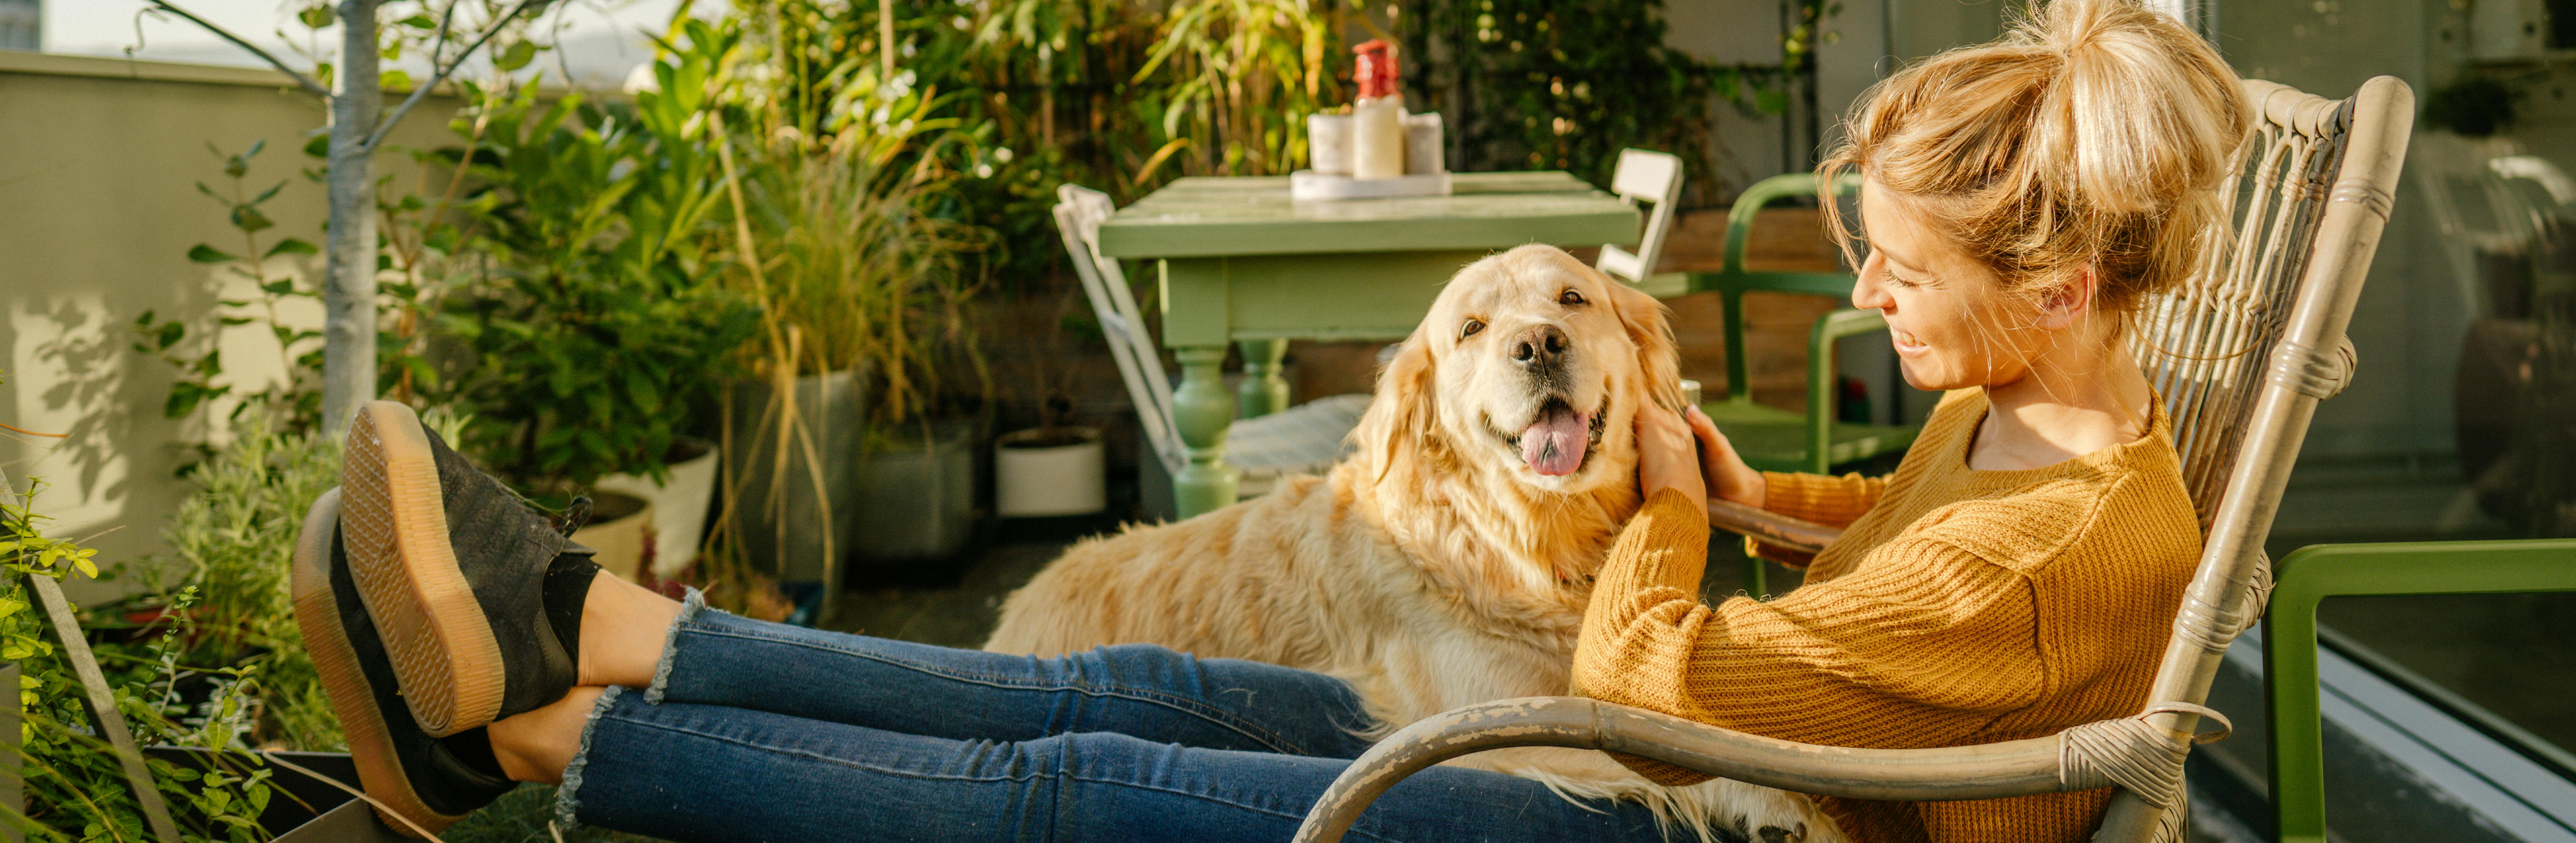 Frau, die auf einer Terrasse mit einem Hund sitzt